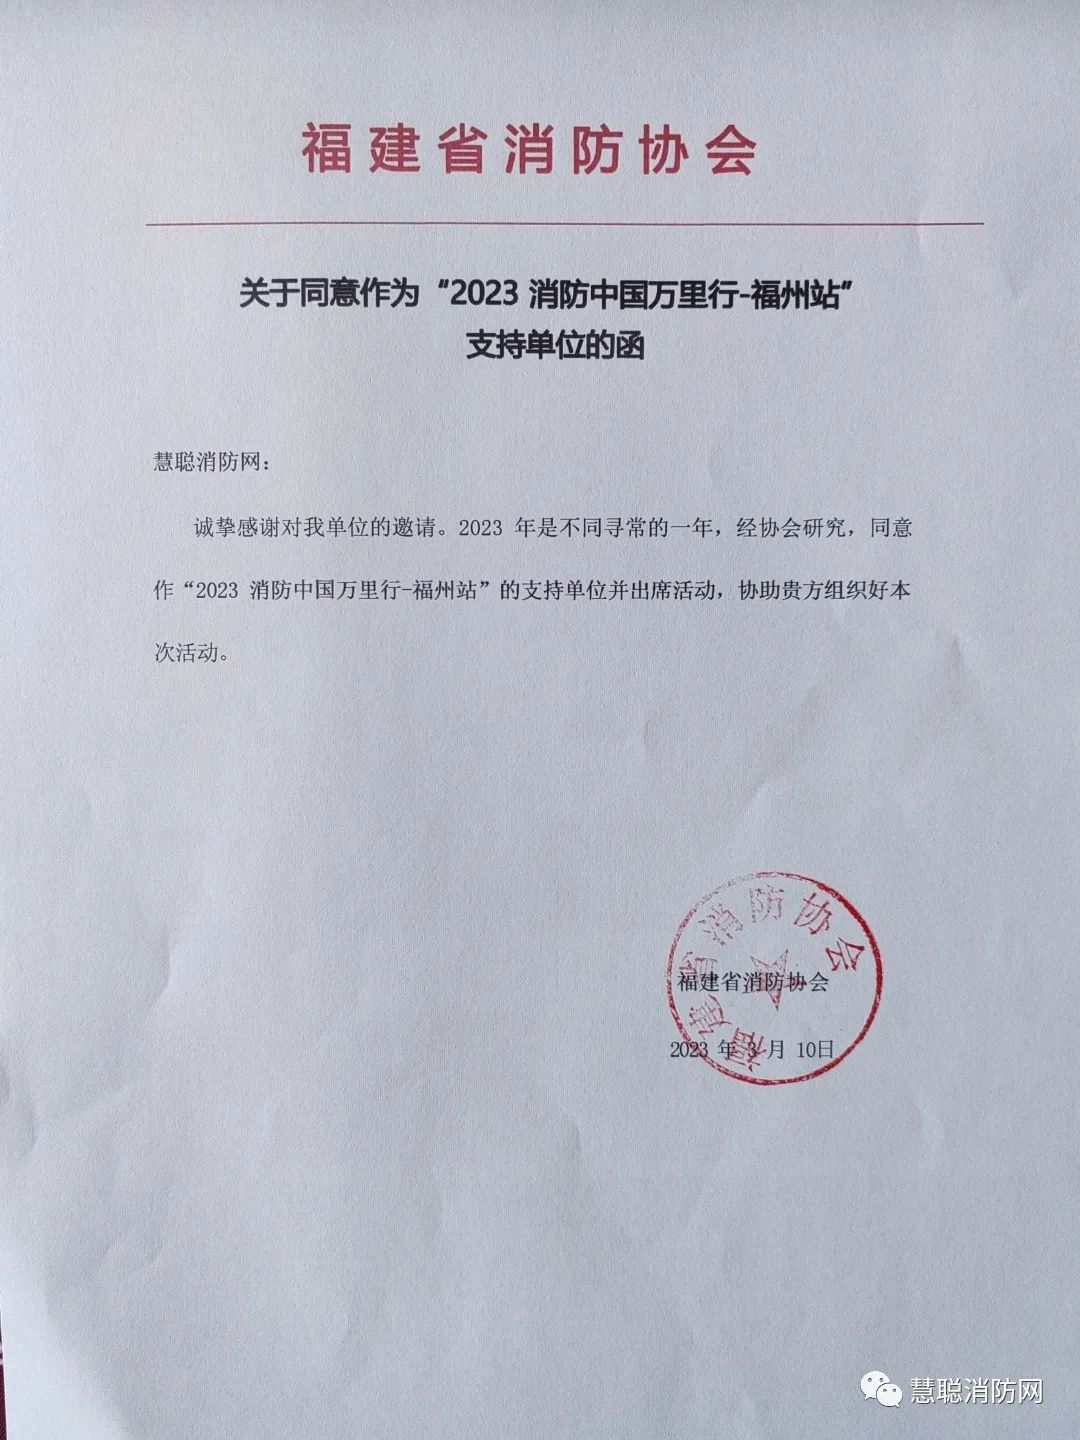 福建省消防协会成为“2023 消防中国万里行-福州站”支持单位